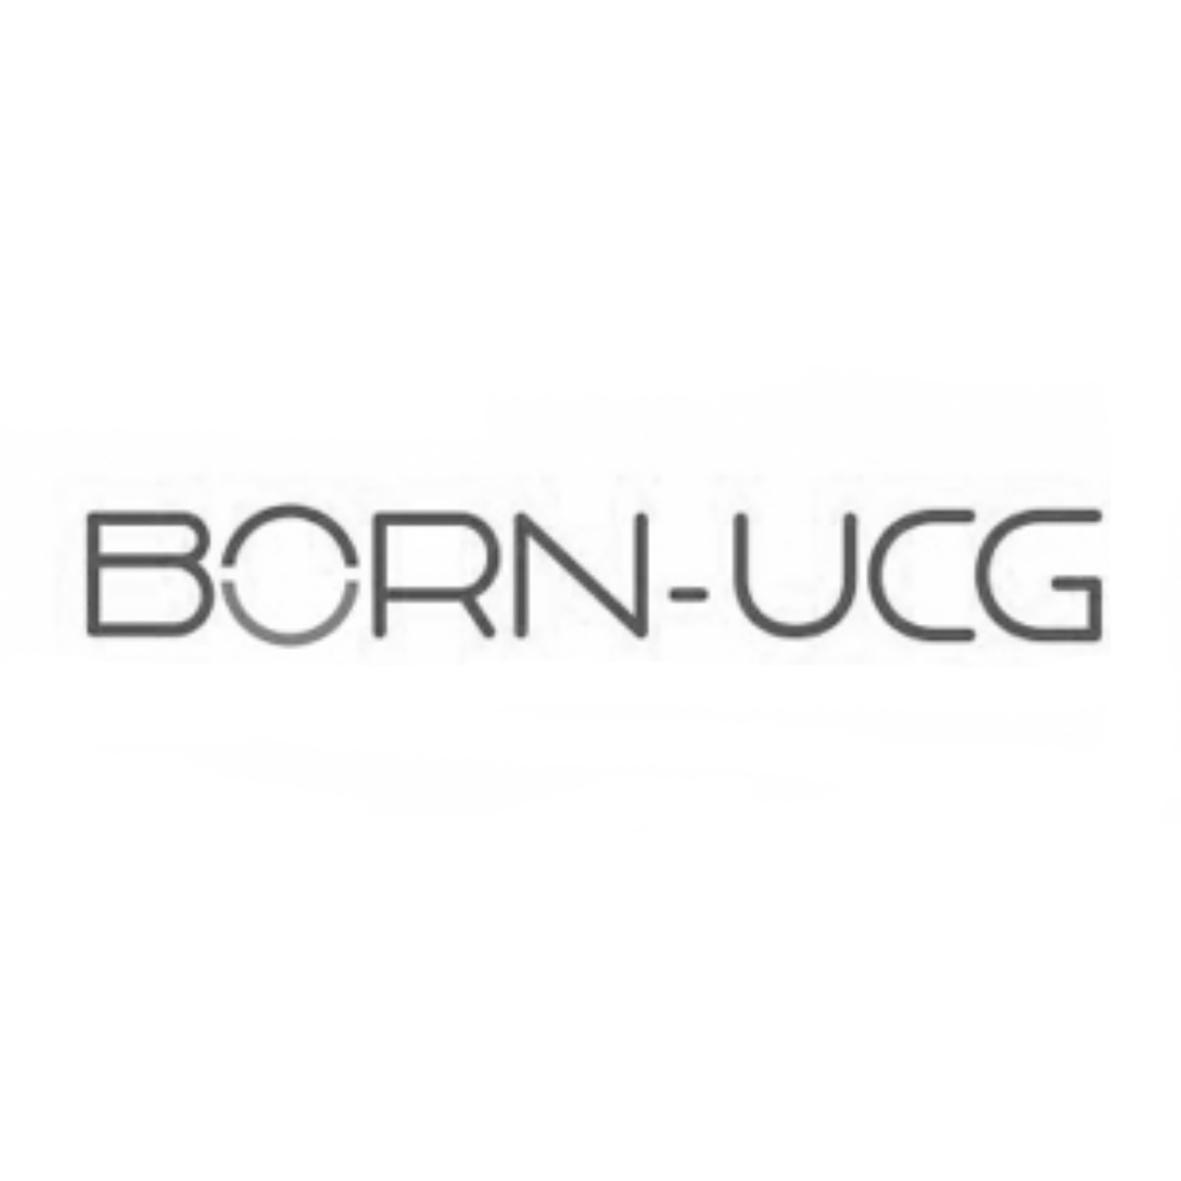 BORN-UCG